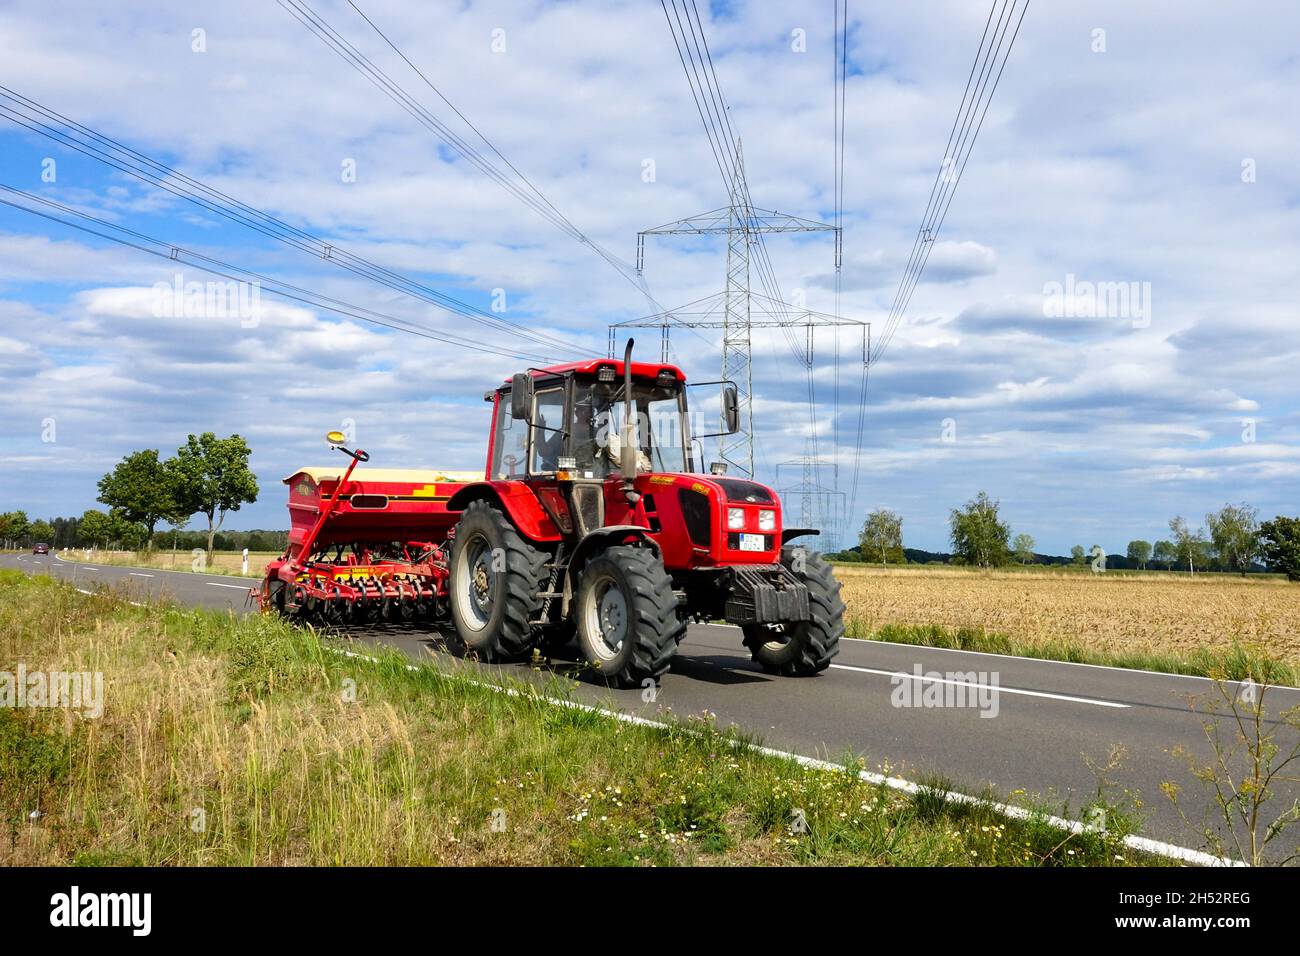 Tracteur de semoir machine agricole Allemagne agricole et route de campagne sous les lignes électriques Banque D'Images